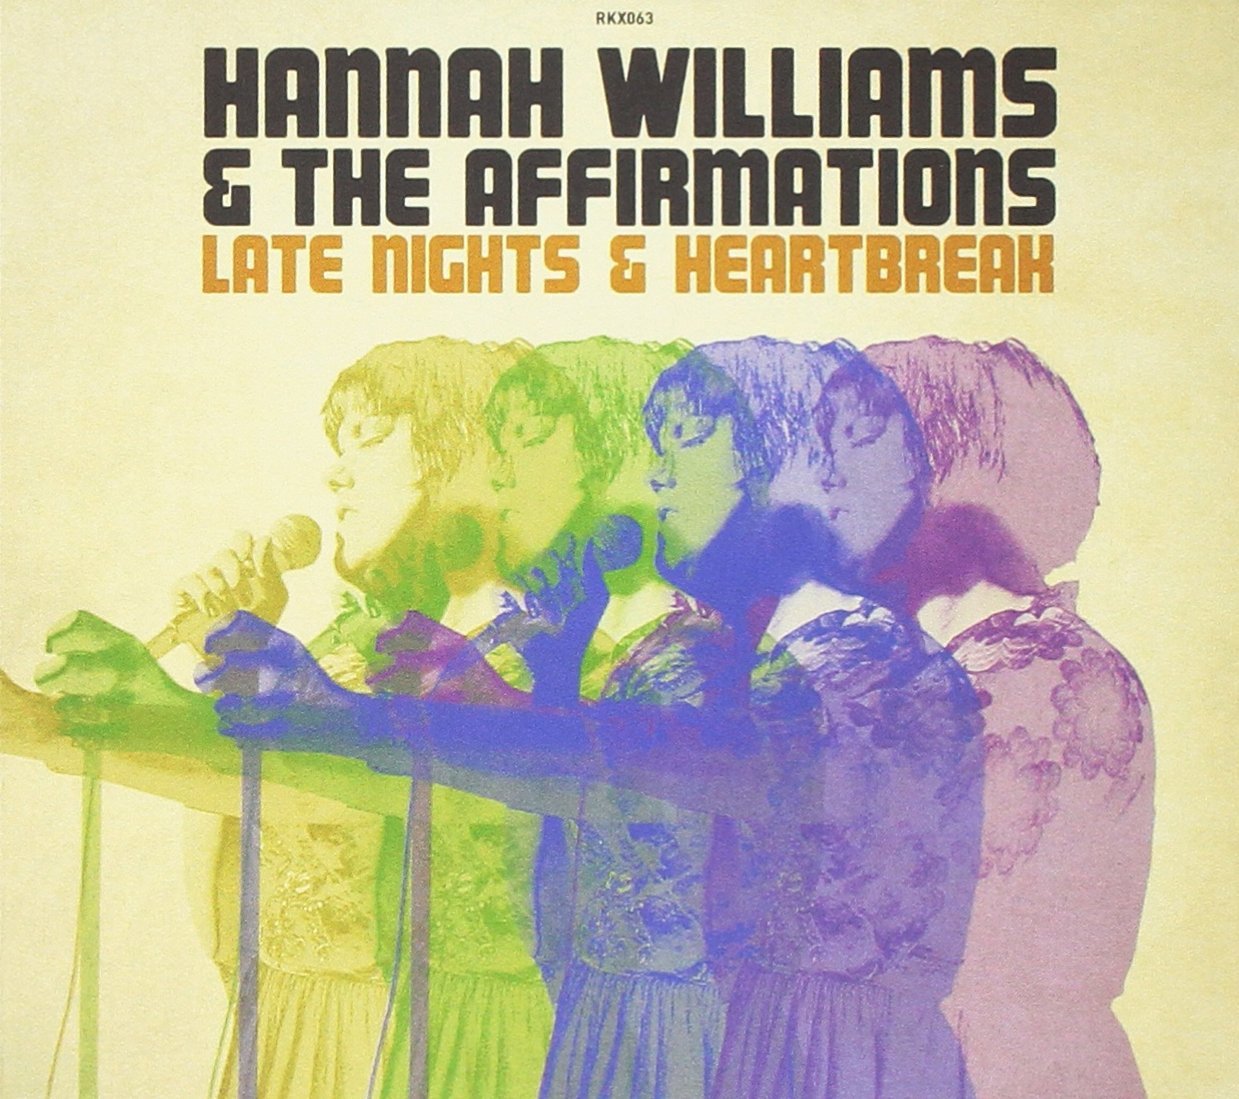 Critique de Late Nights & Heartbreak le deuxième album de la chanteuse anglaise Hannah Williams accompagnée par le groupe The Affirmations et sorti chez Record Kicks